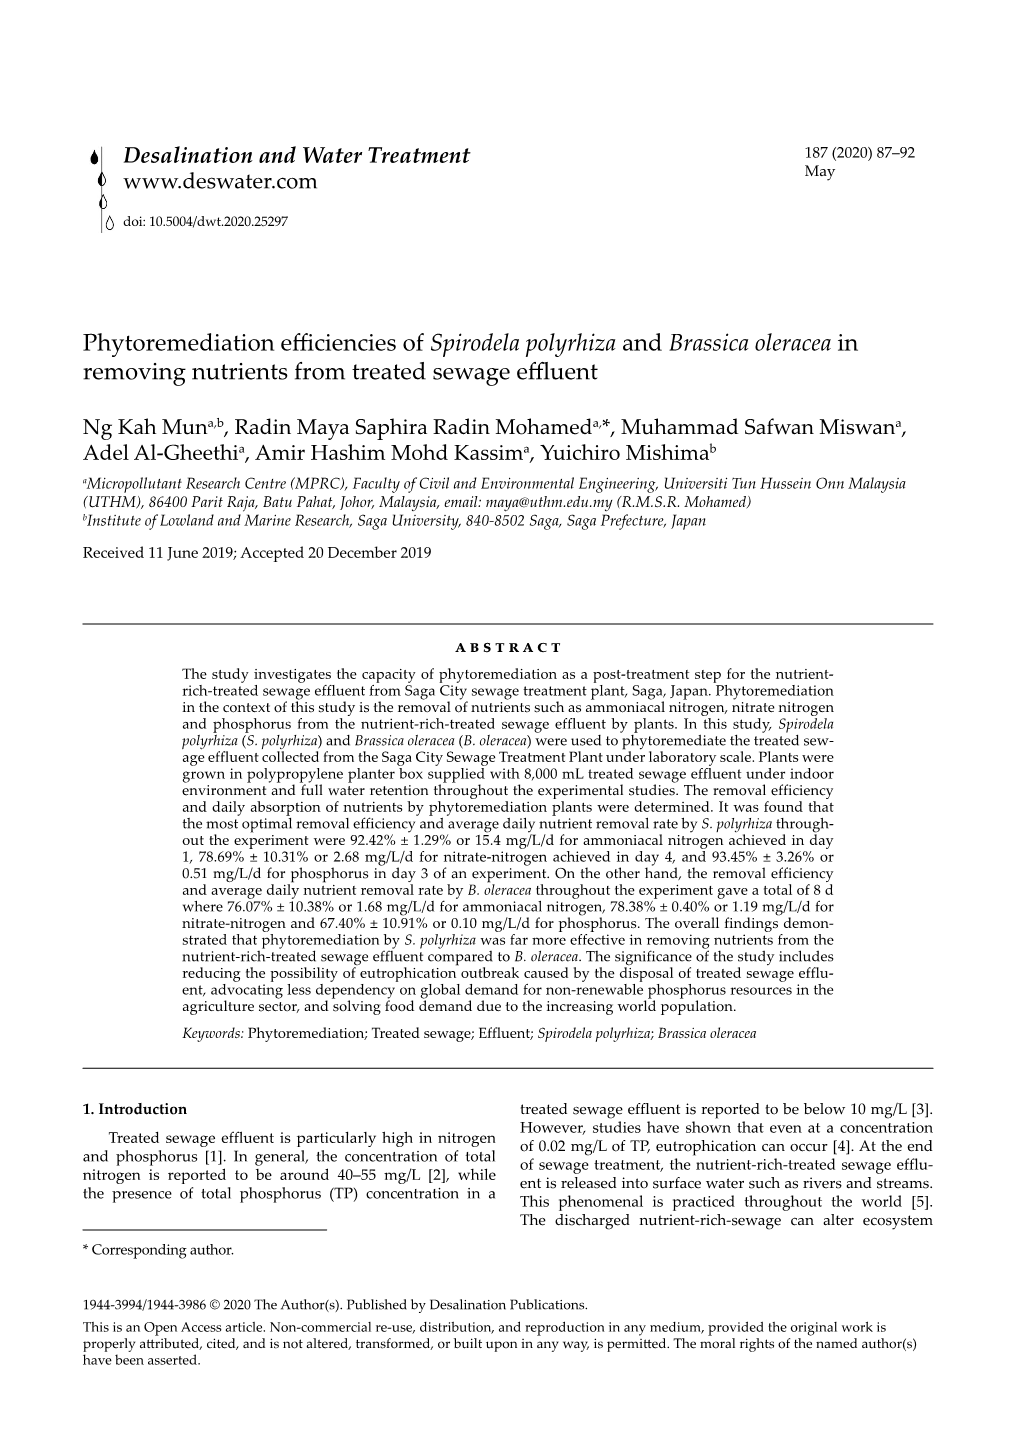 Phytoremediation Efficiencies of Spirodela Polyrhiza and Brassica